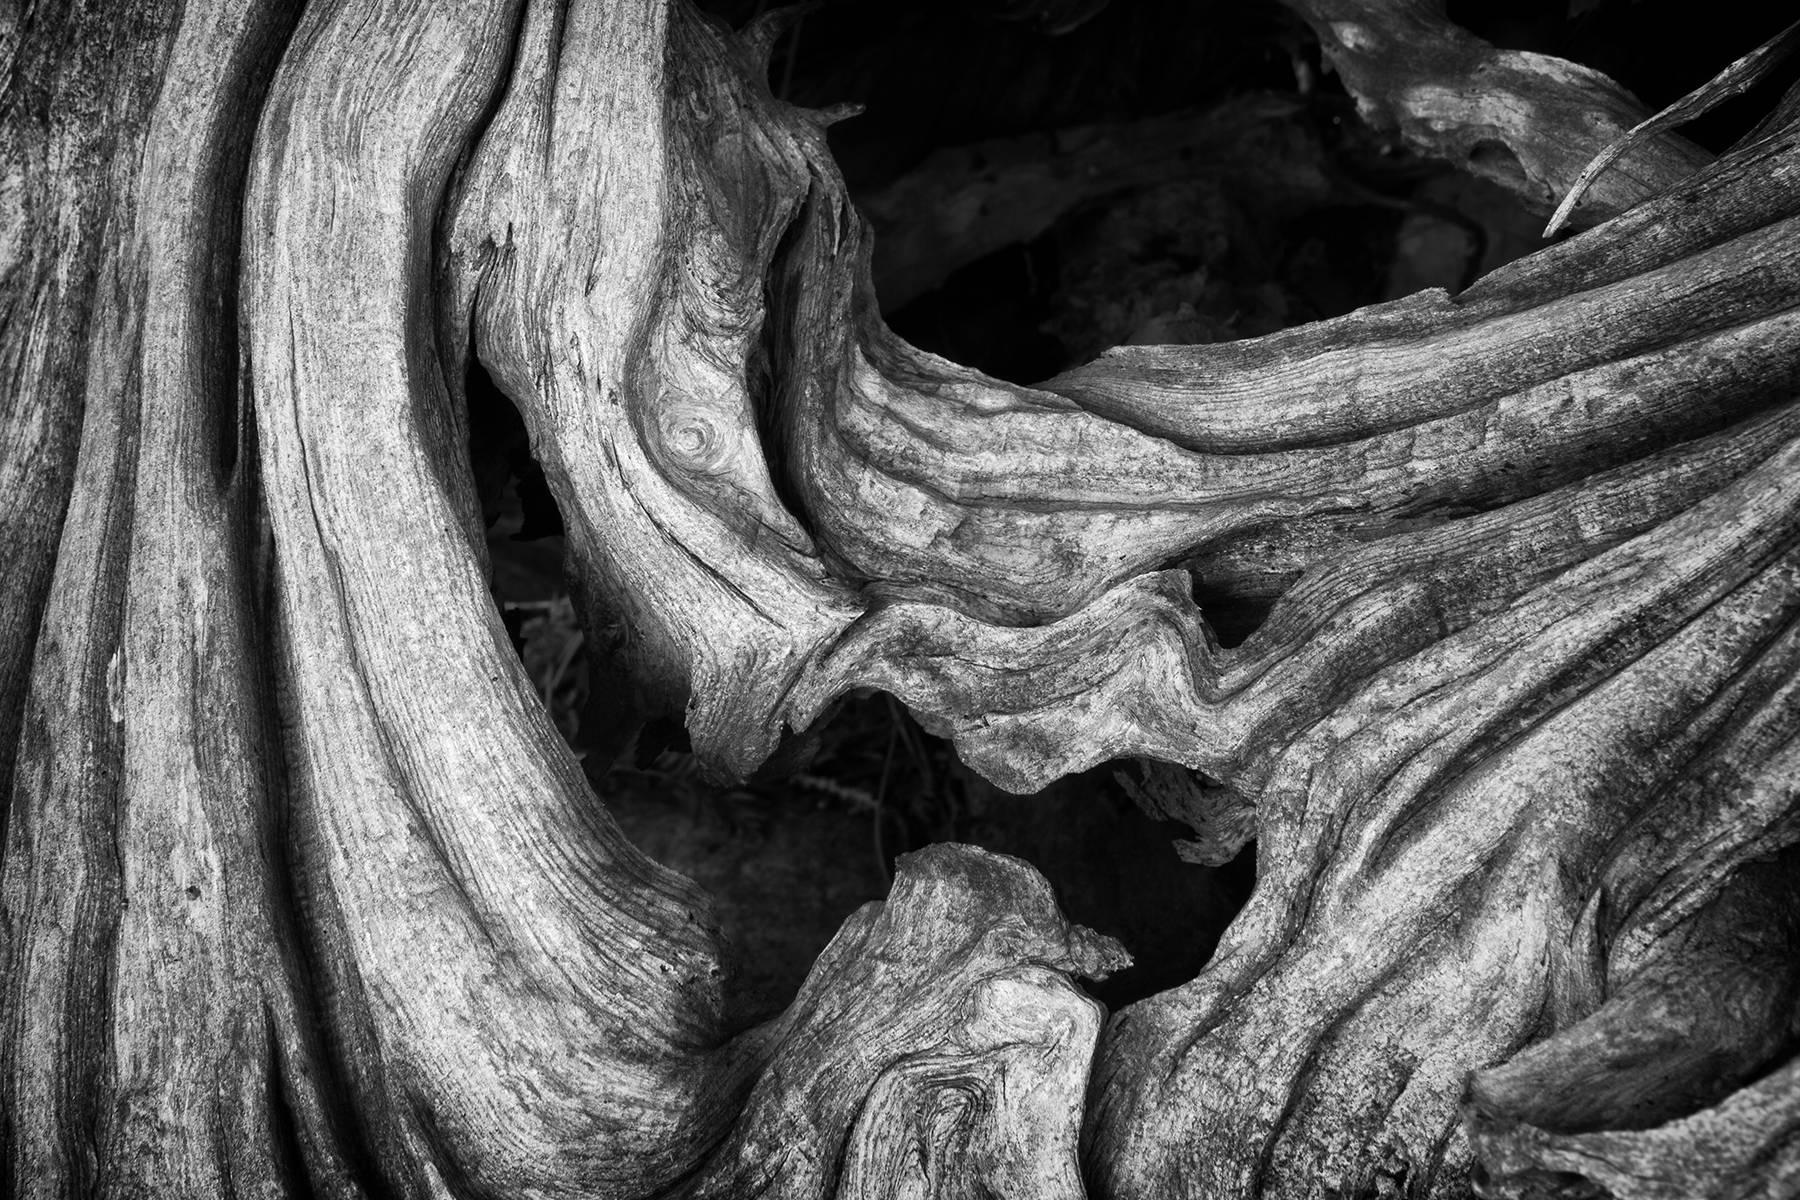 "Erosion #4", paysage, arbre, racines, noir, blanc, tirage métal, photographie.